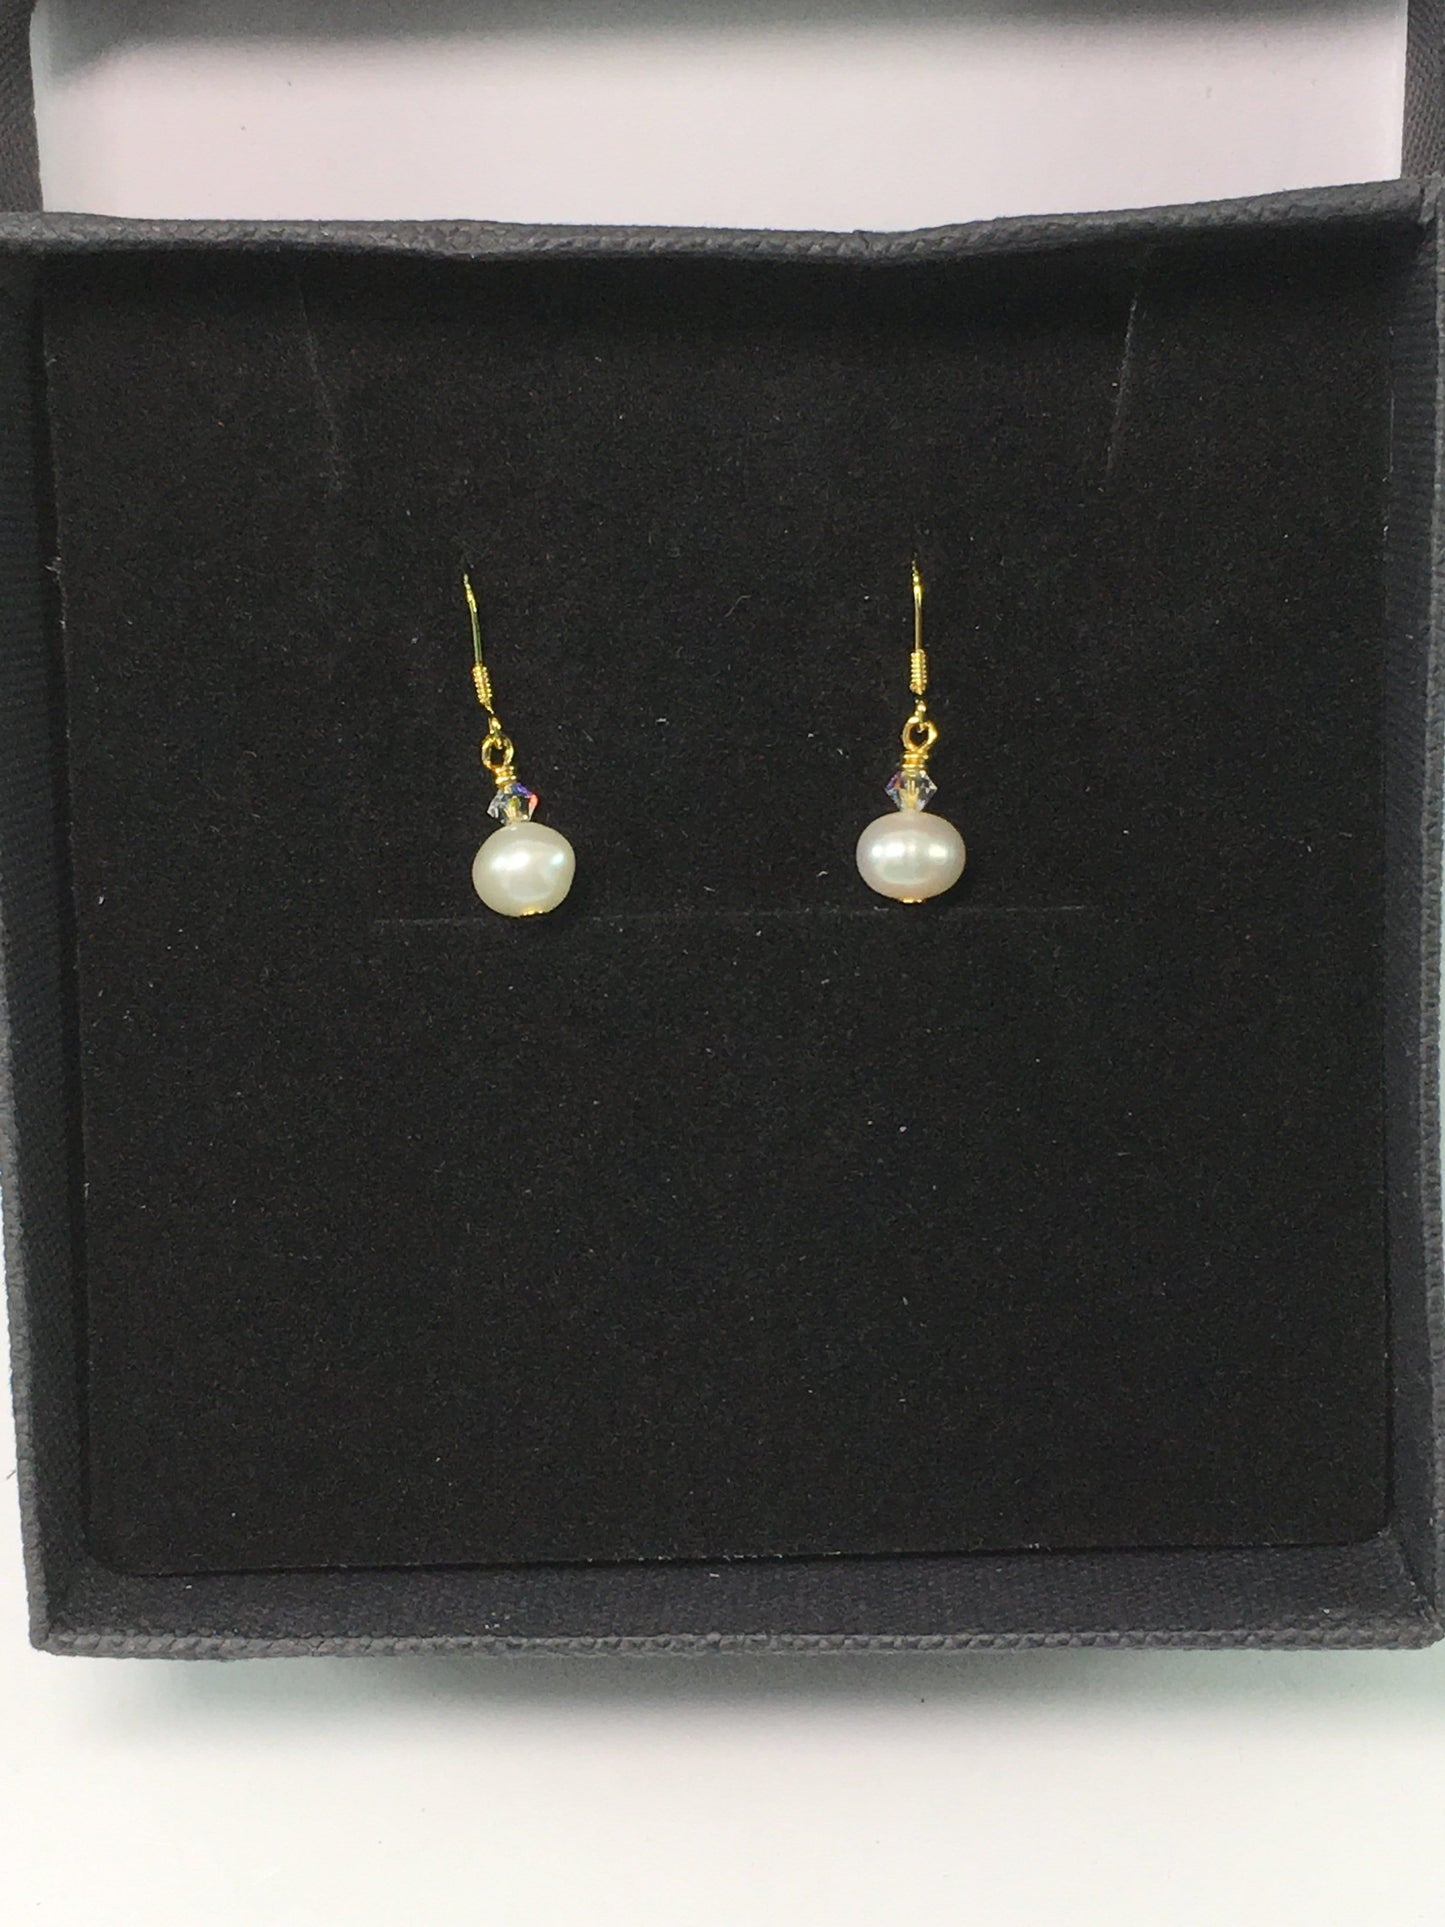 Earrings Sterling Silver Pearl Earrings Jewelz Galore Sterling Silver Pearl Earrings | Jewelz Galore | Jewellery Cambridge